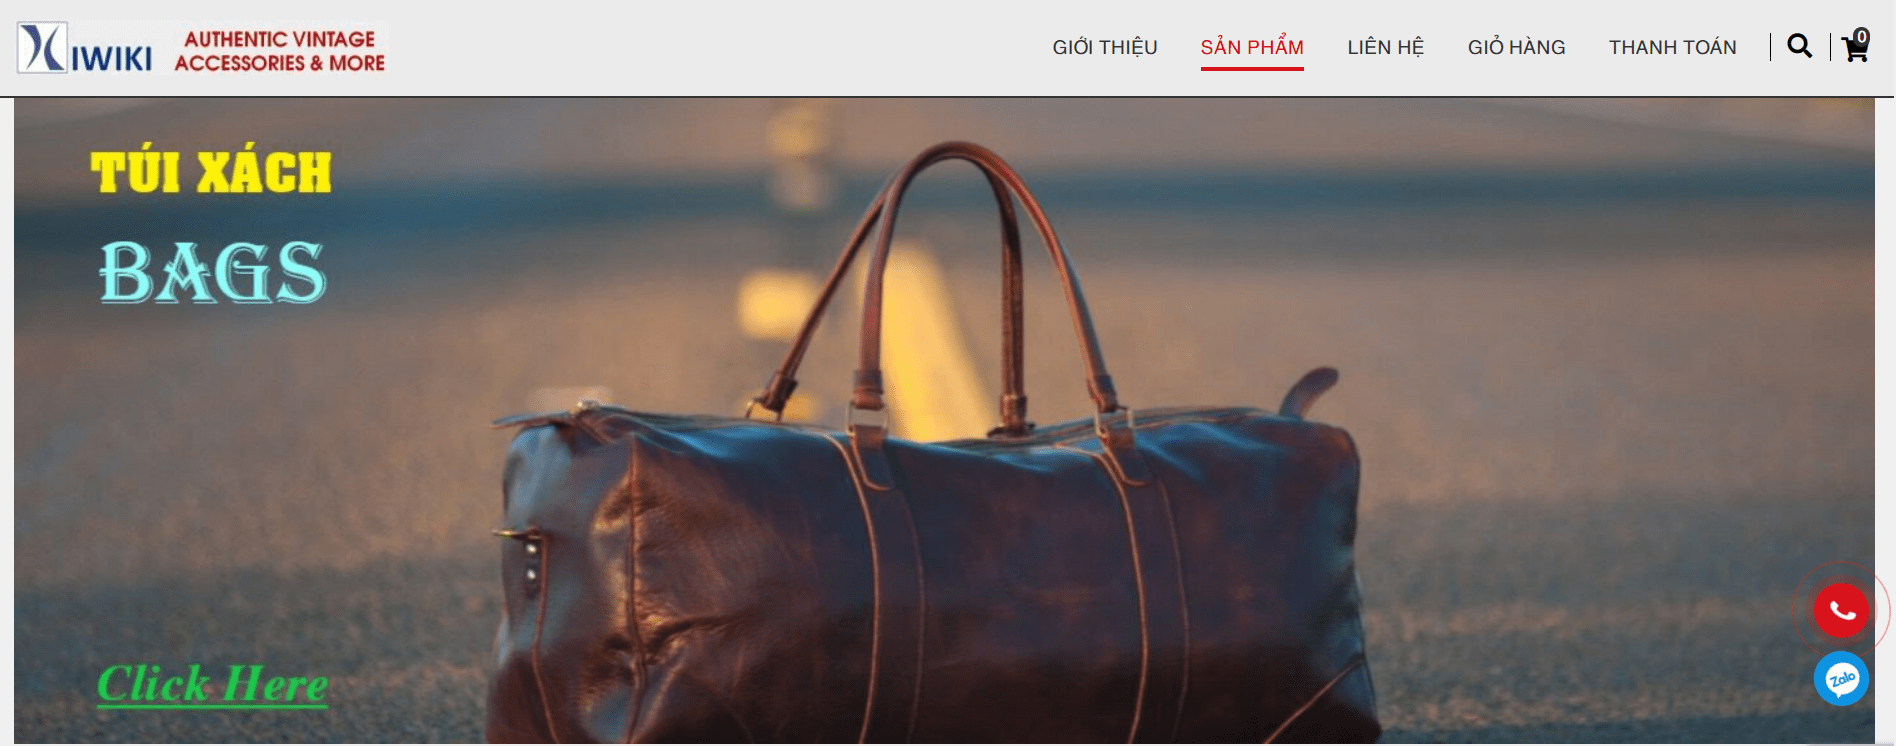 Kiwiki - Địa chỉ bán túi Dior secondhand hàng hiệu uy tín tại Hà Nội 